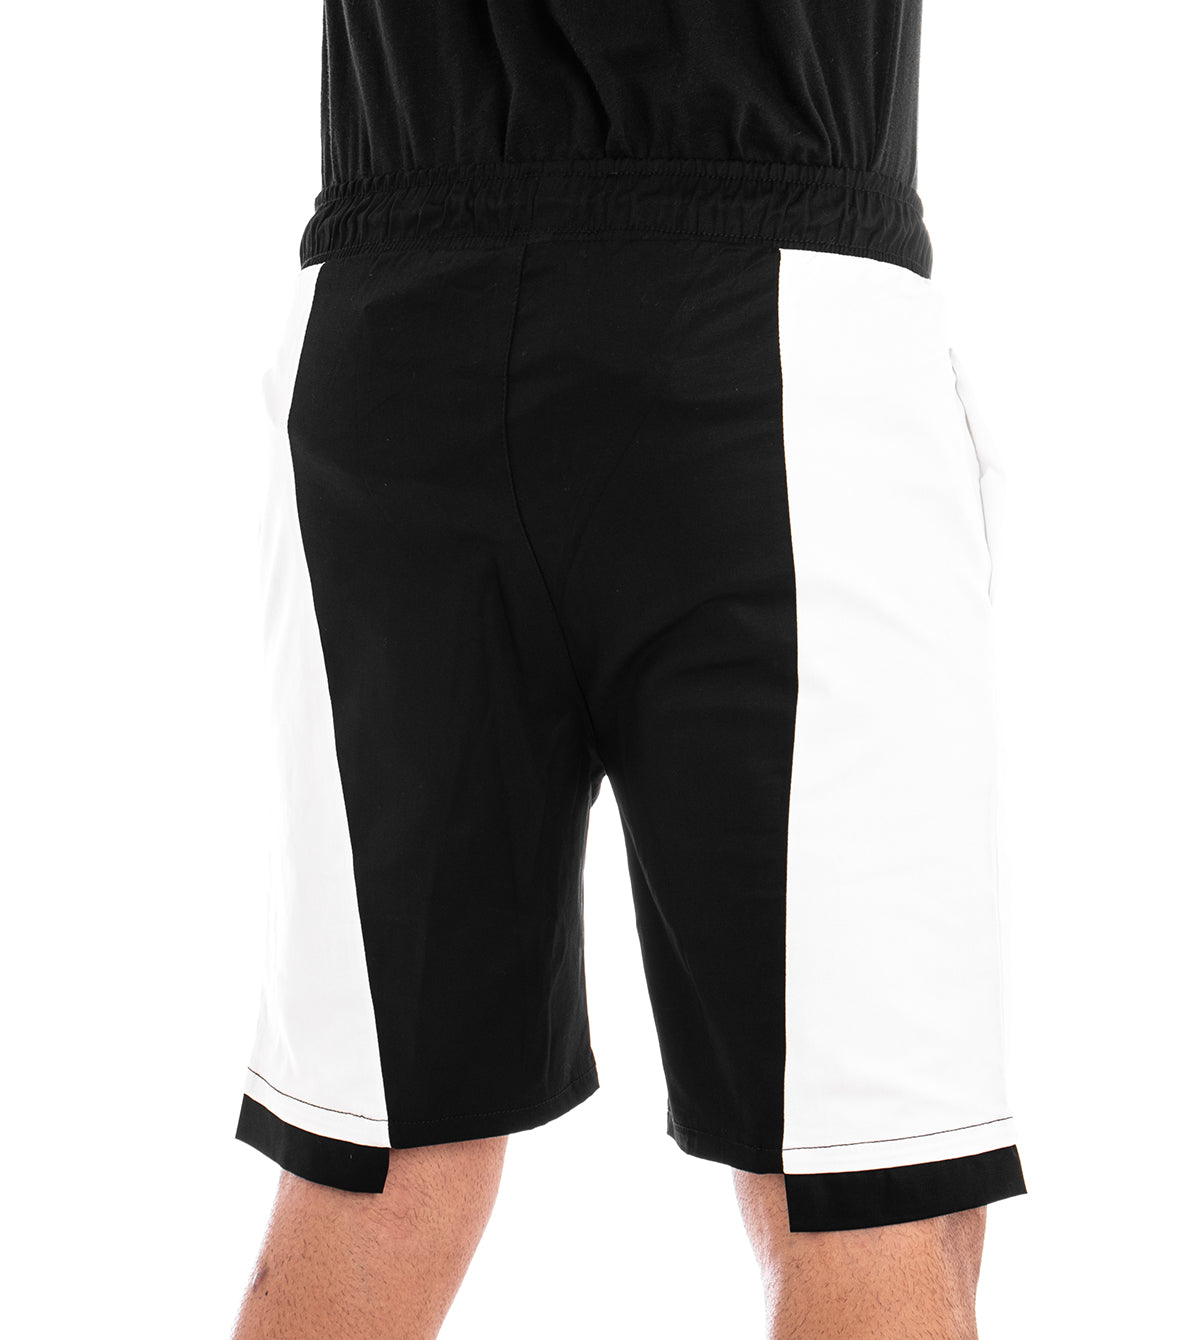 Bermuda Pantaloncino Uomo Corto Elastico Bicolore Nero GIOSAL-PC1280A